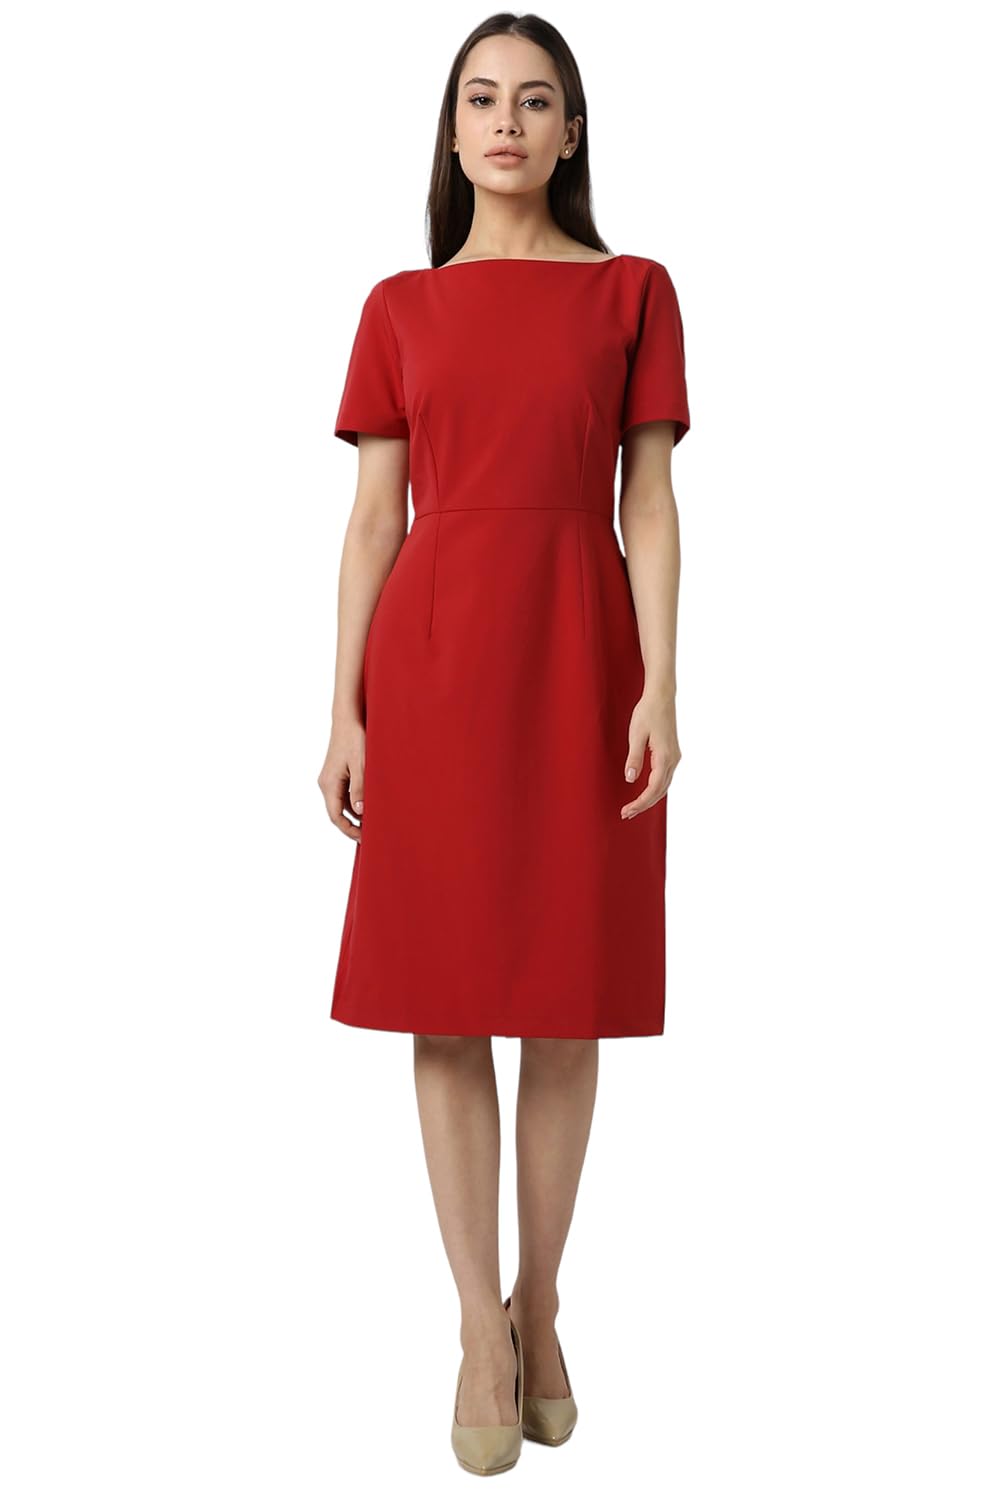 Van Heusen Women's Polyester Blend Modern Knee Length Dress (Vwdrfrgft16804_Red M